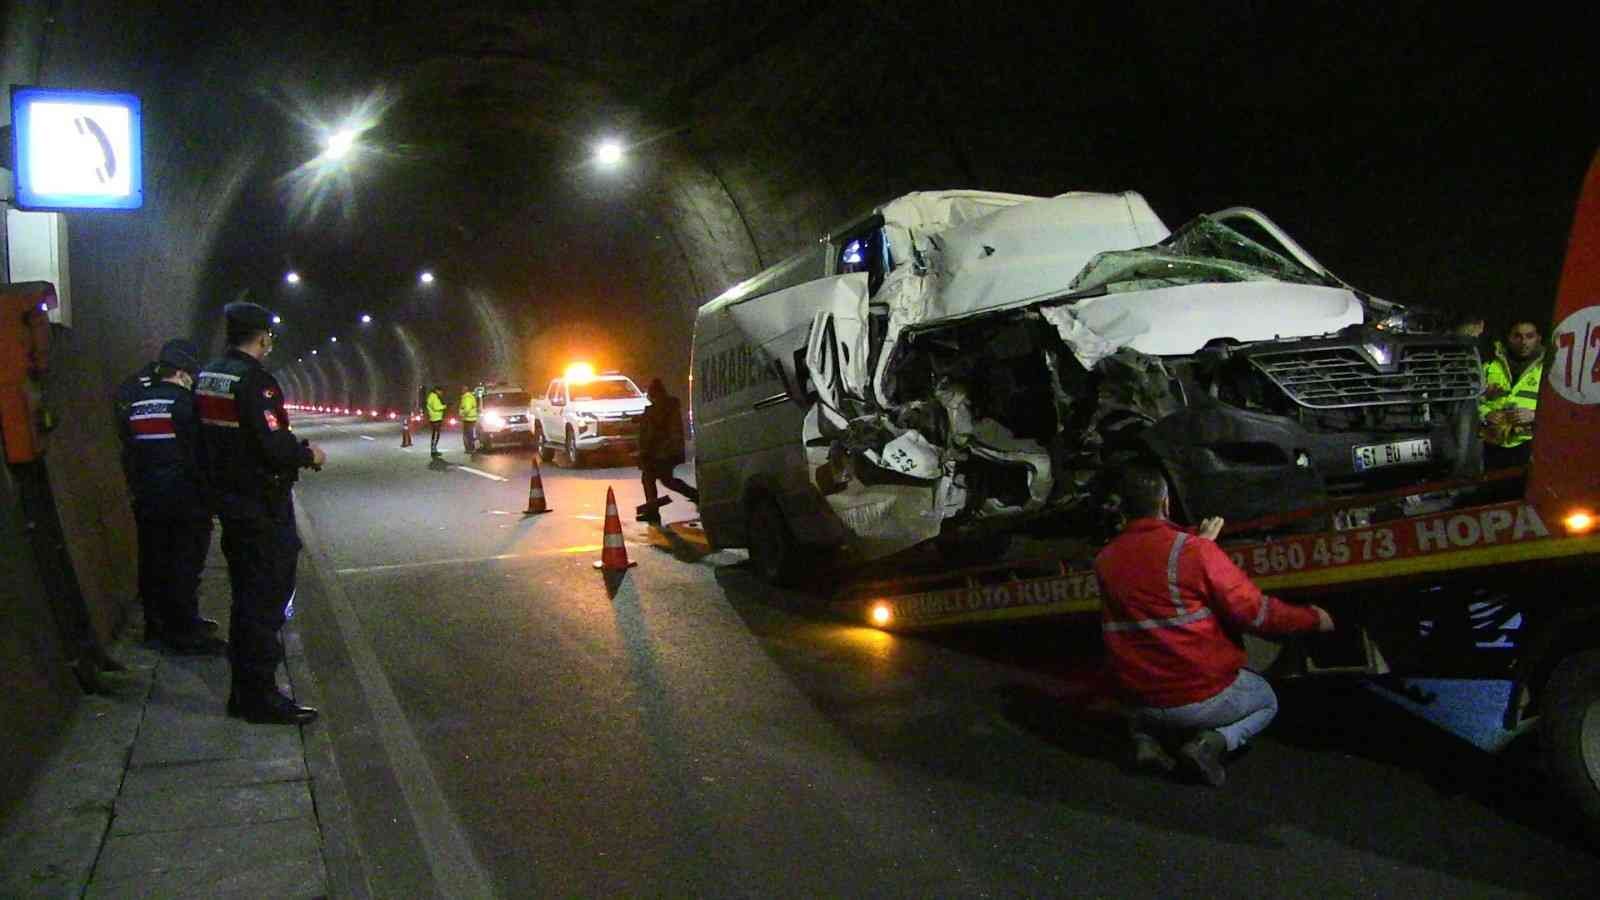 Artvin’de tüneldeki kazada hurdaya dönen araçtan sağ kurtuldu #artvin